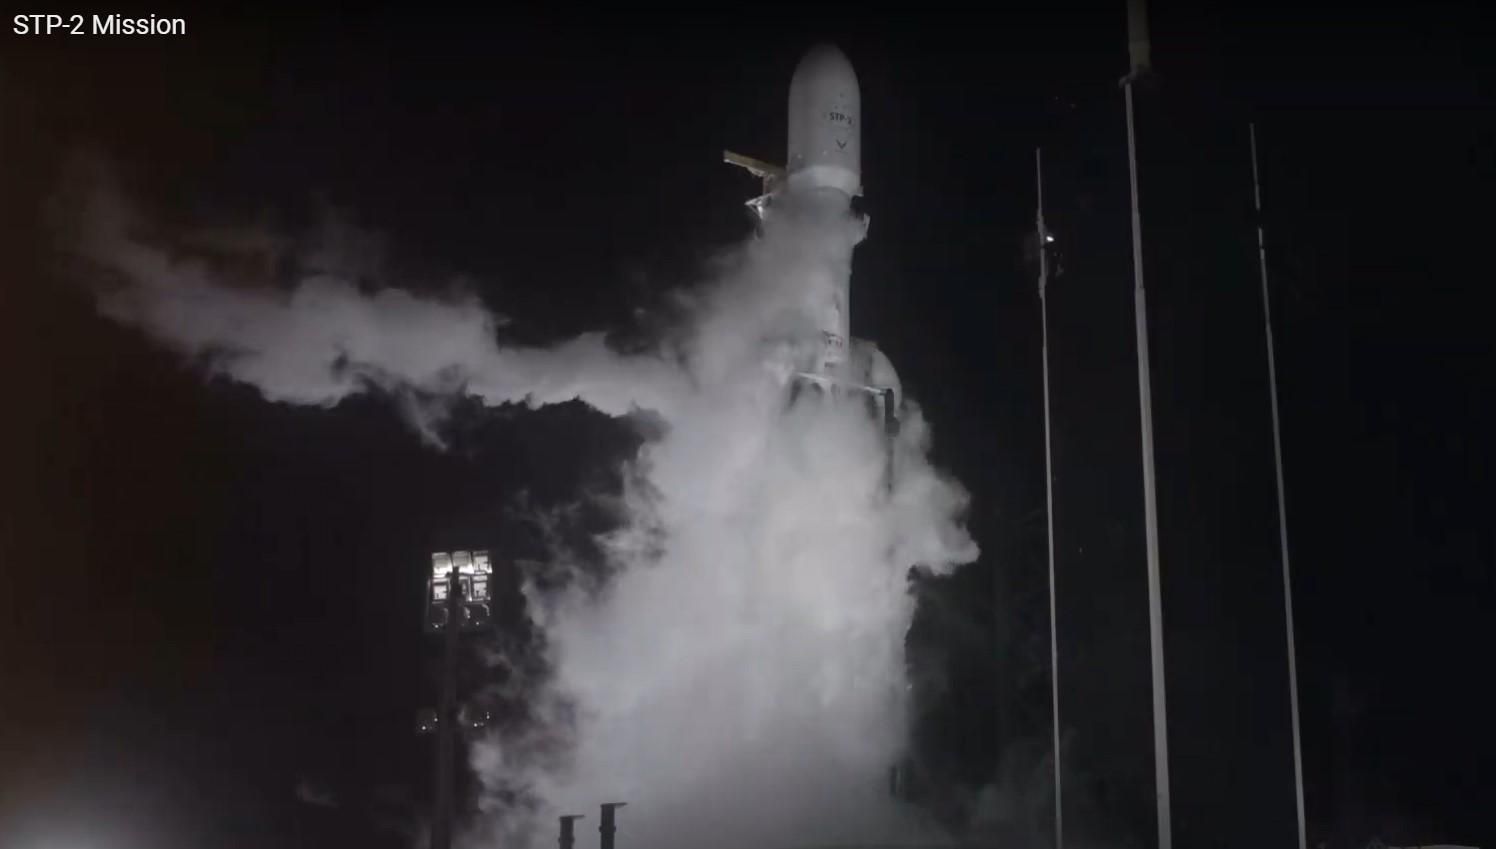 SpaceX Ілона Маска запустила Falcon Heavy з рештками 152 людей